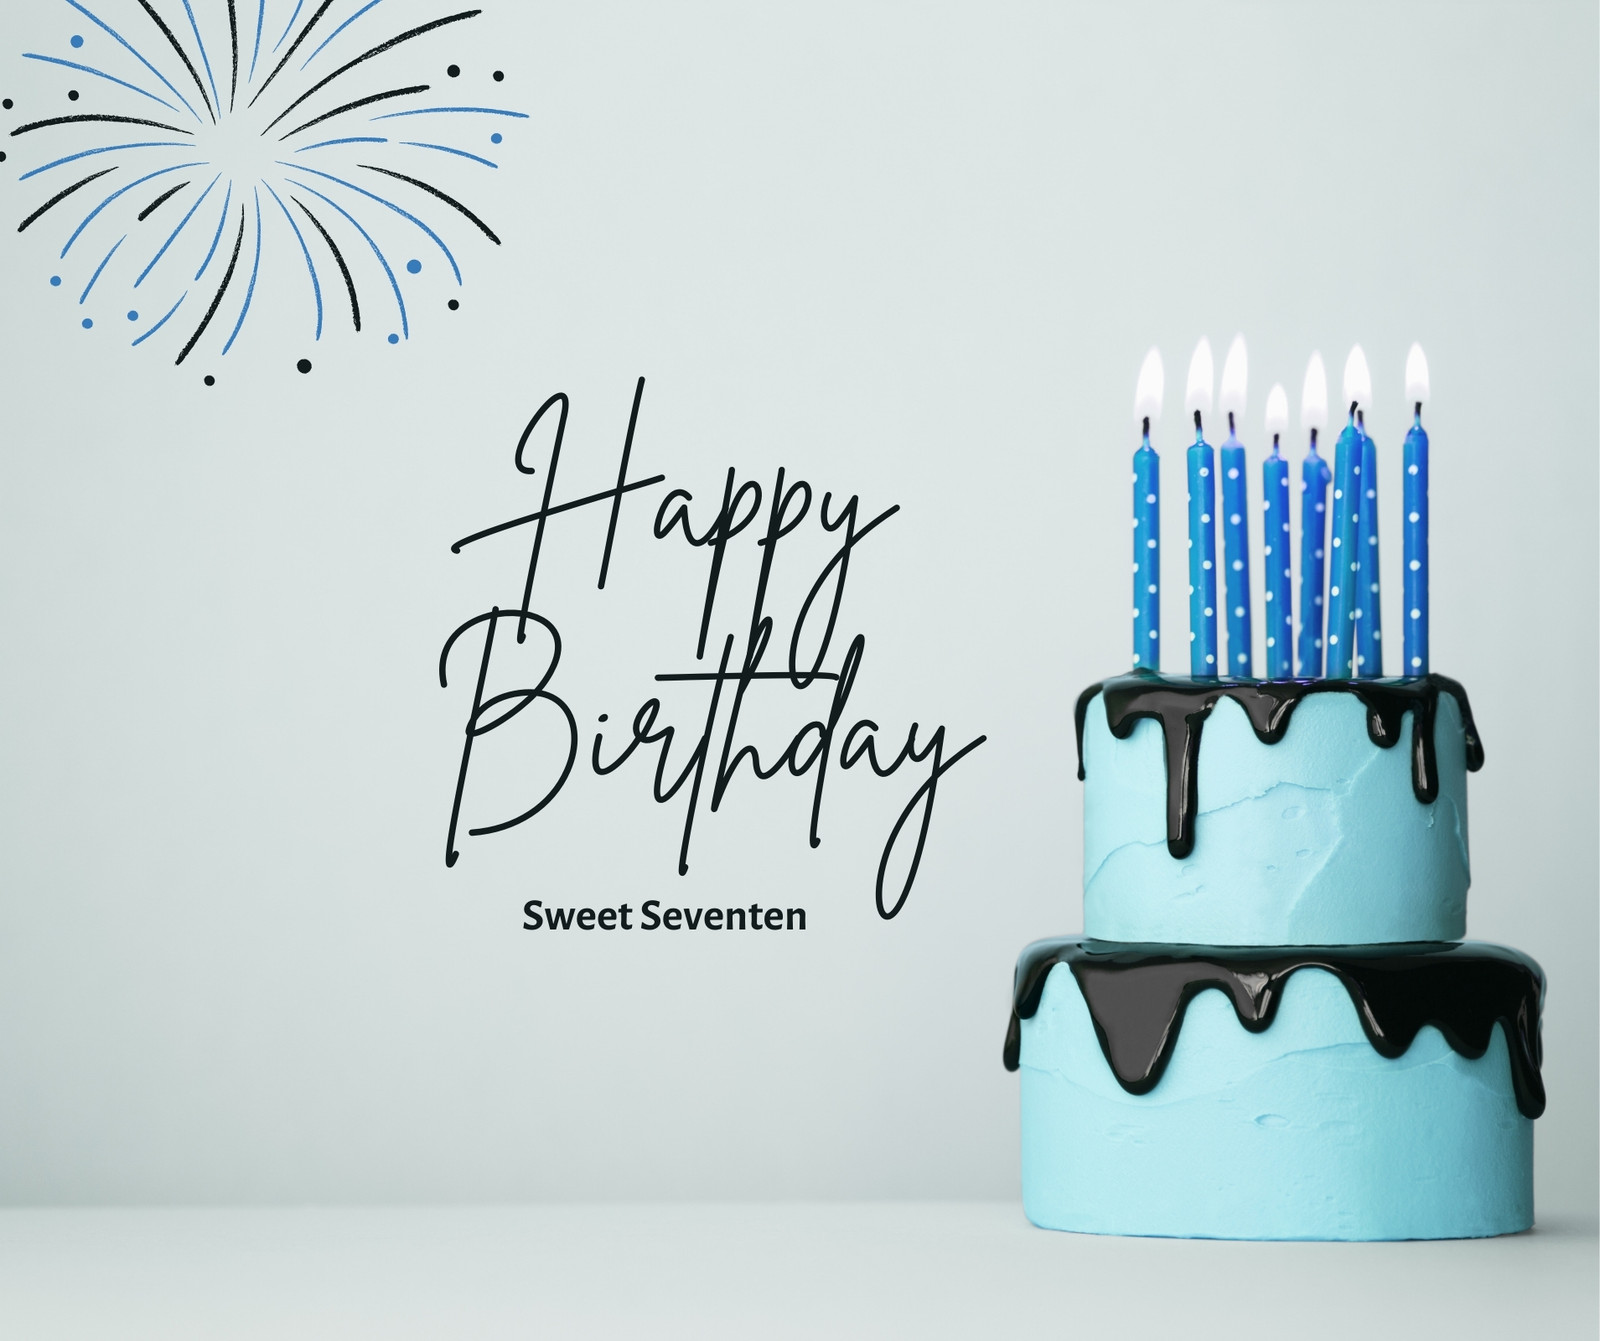 Mẫu thiết kế sinh nhật: Bạn đang muốn tìm kiếm ý tưởng thiết kế sinh nhật độc đáo? Hãy xem qua những mẫu thiết kế sinh nhật đẹp mắt và sáng tạo nhất để tạo nên bữa tiệc sinh nhật không thể nào quên được.